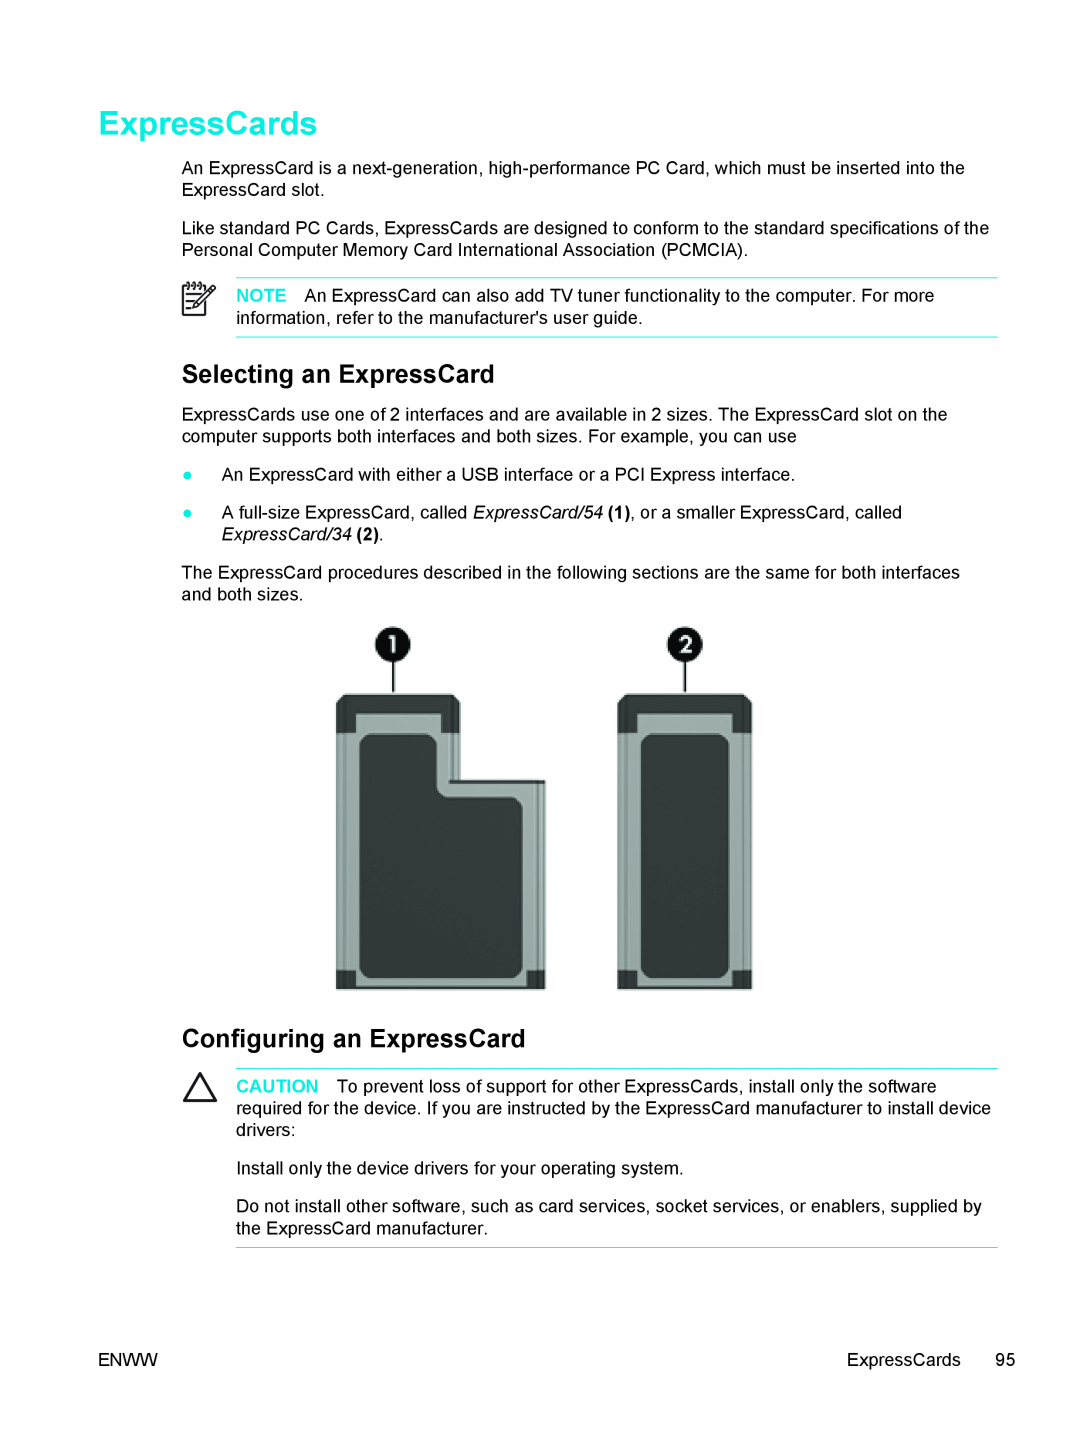 HP V5209US, V5224TU, V5221TU, V5221EA, V5219TU, V5218TU ExpressCards, Selecting an ExpressCard, Configuring an ExpressCard 